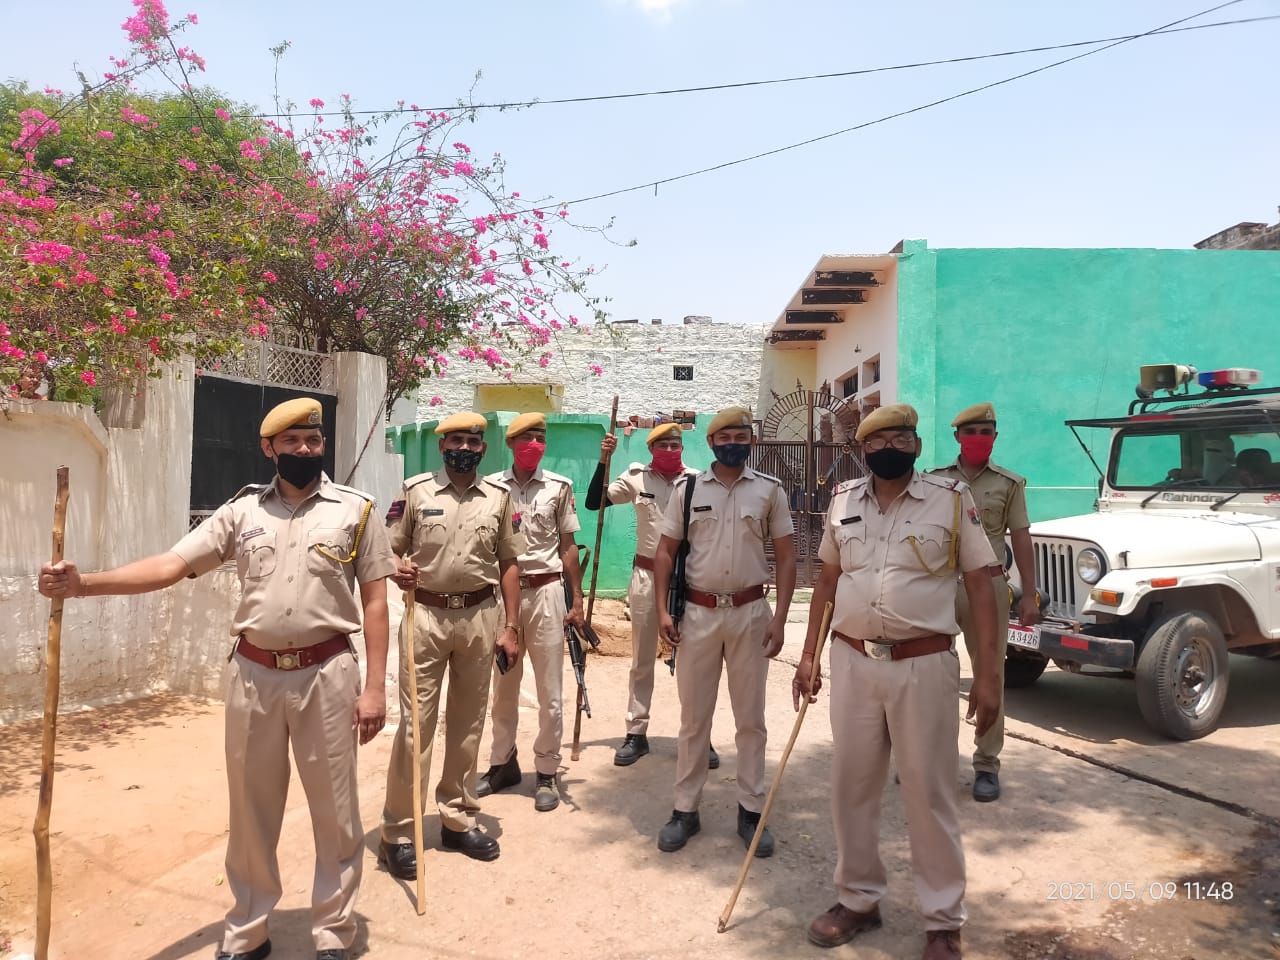 धौलपुर पुलिस ने जिले भर में किया फ्लैग मार्च, कल 10 मई से शुरु हो रहे सम्पूर्ण लॉक डाउन में वाहनों के आवागमन पर रहेगा पूर्ण प्रतिबंध | New India Times